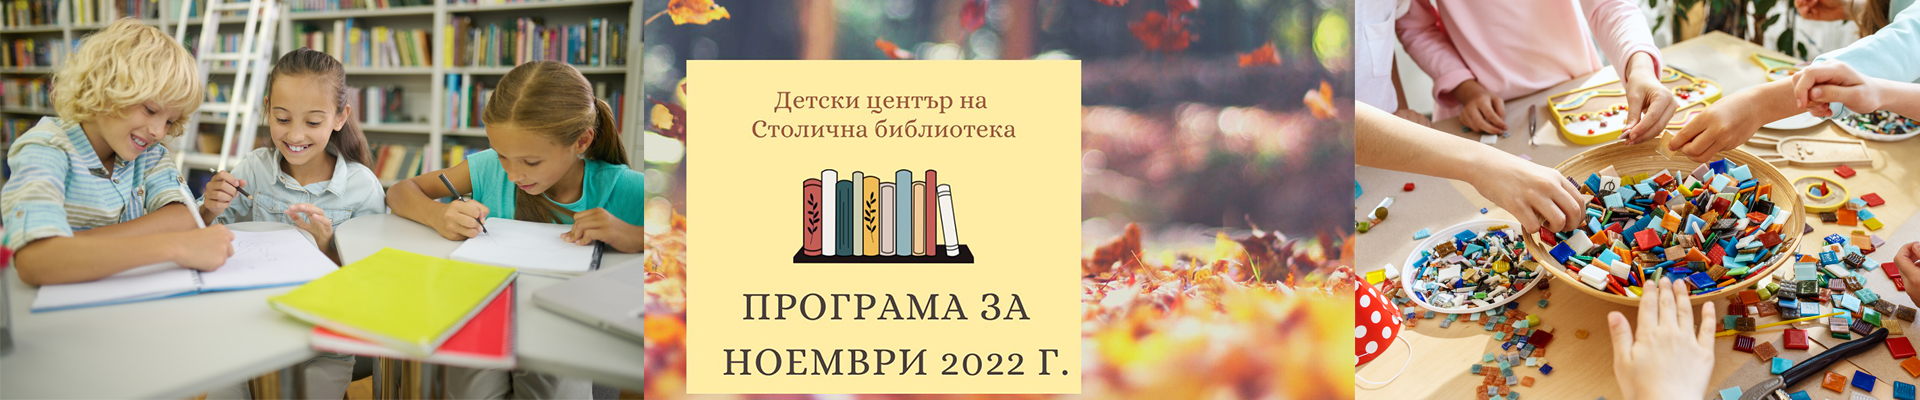 Програма на Детски център на Столична библиотека  за месец ноември 2022 г.